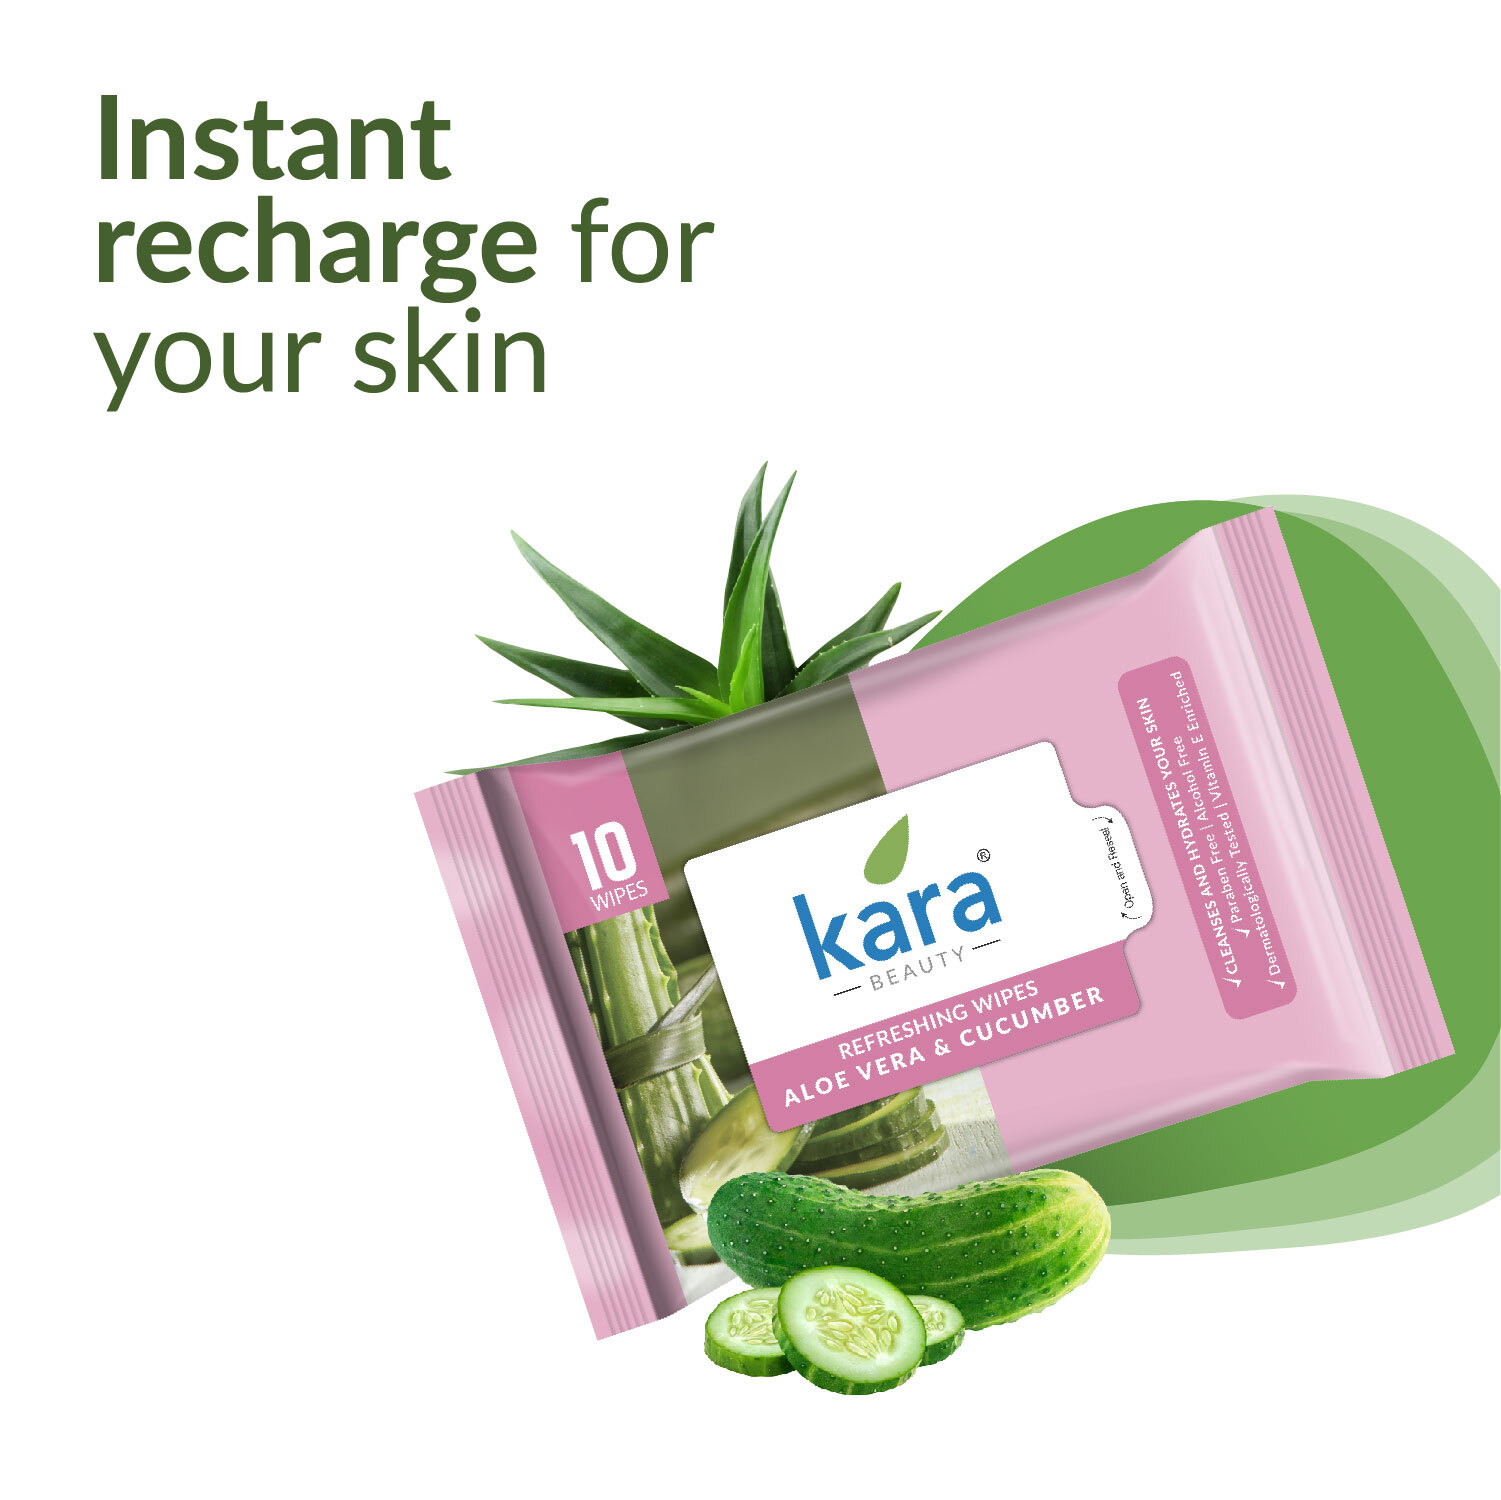 Kara Refresh Refreshing Wipes Aloe Vera & Cucumber 10 Pulls